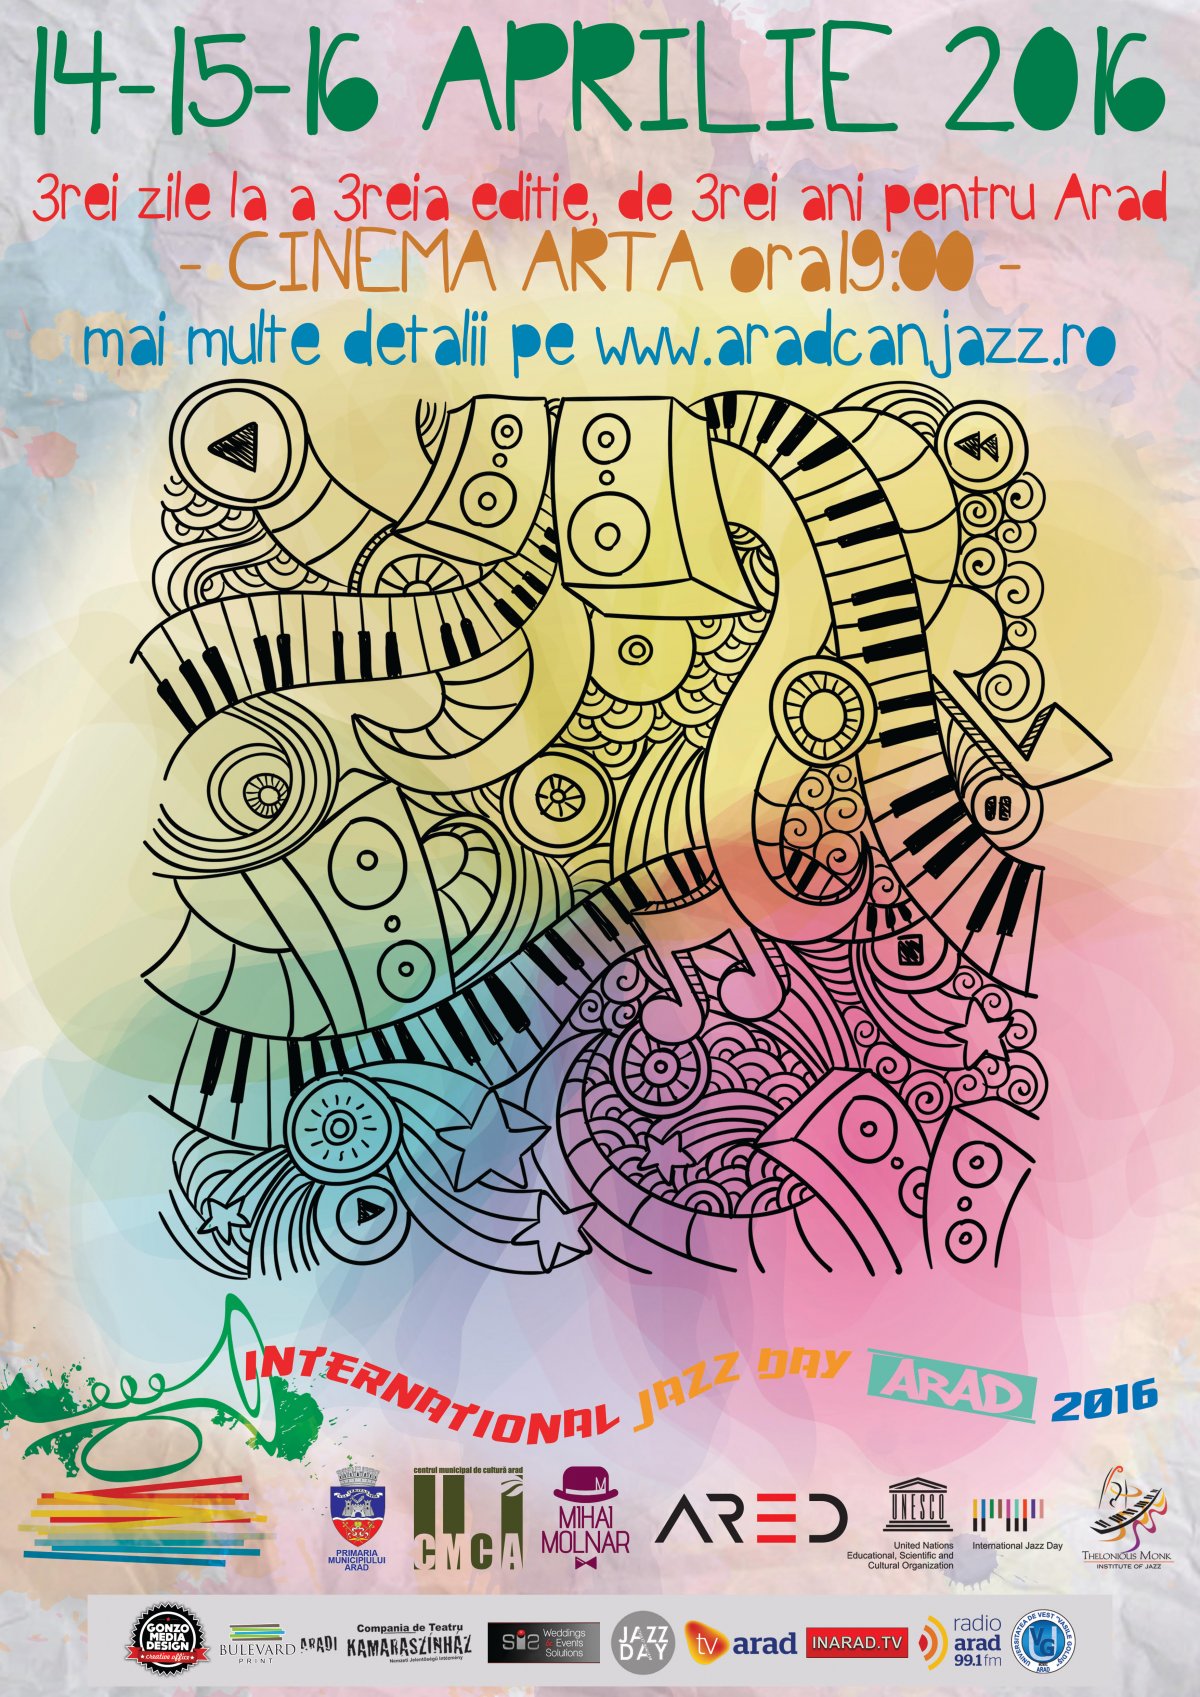  Ziua Internaţională a Jazzului la Arad